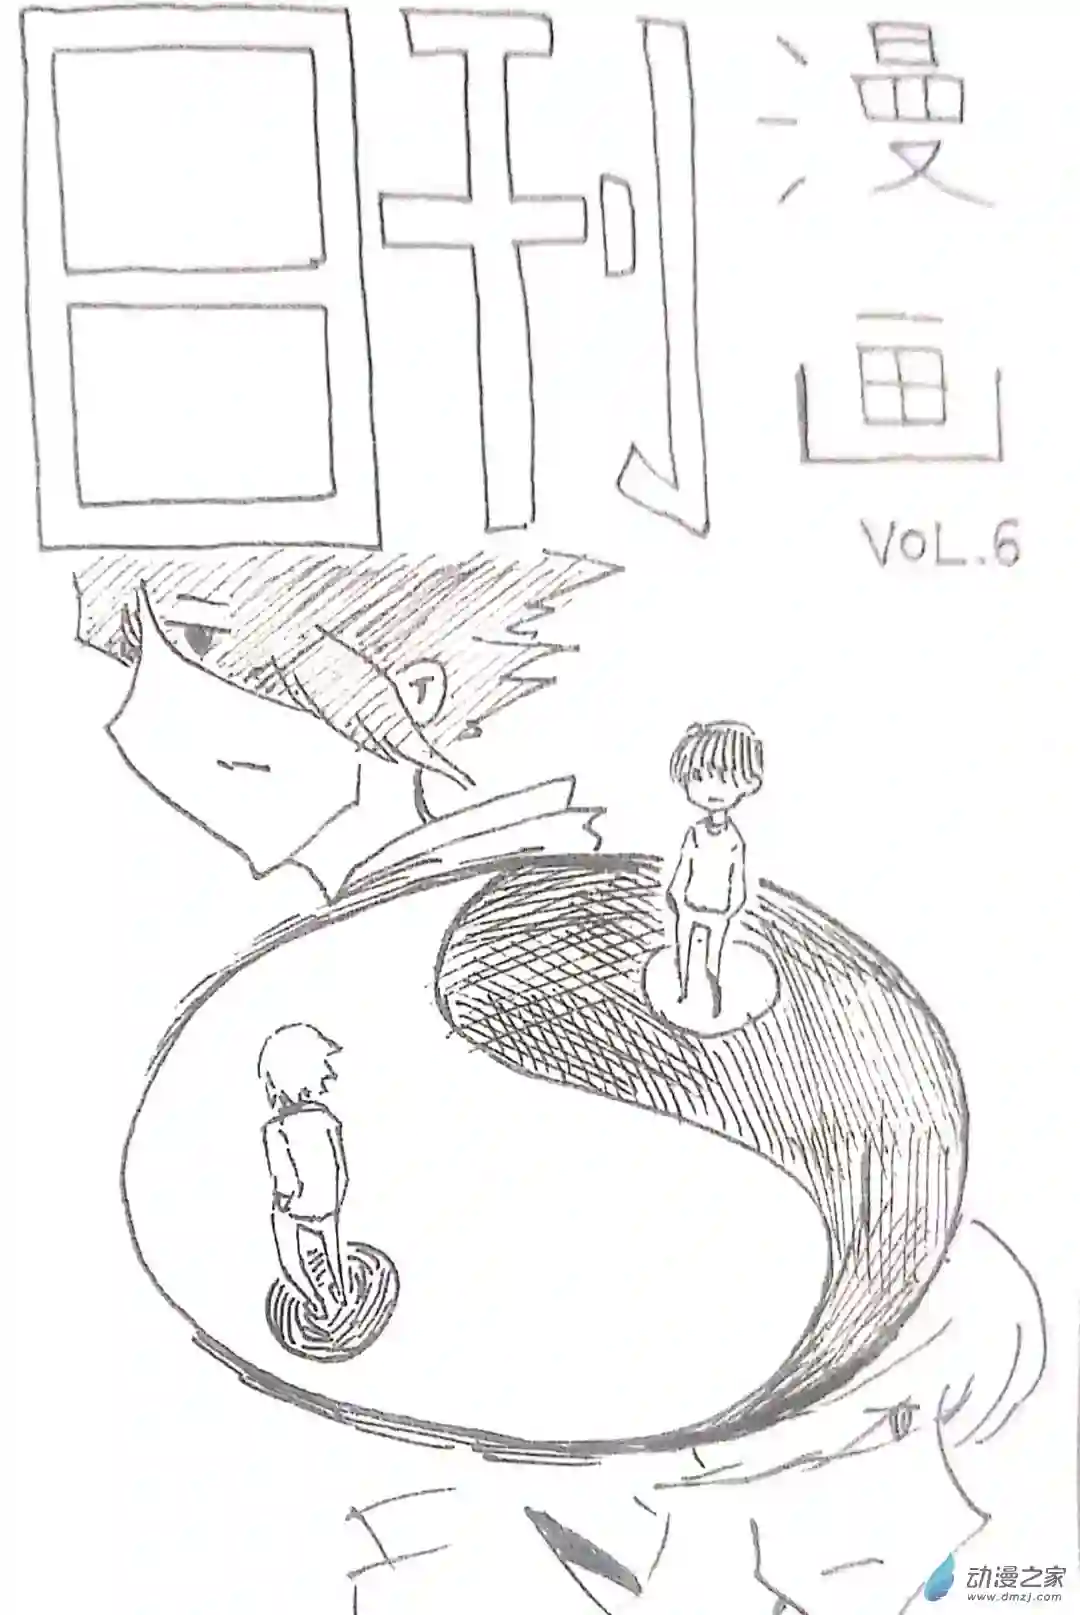 日刊漫画42 日刊漫画vol6（上）